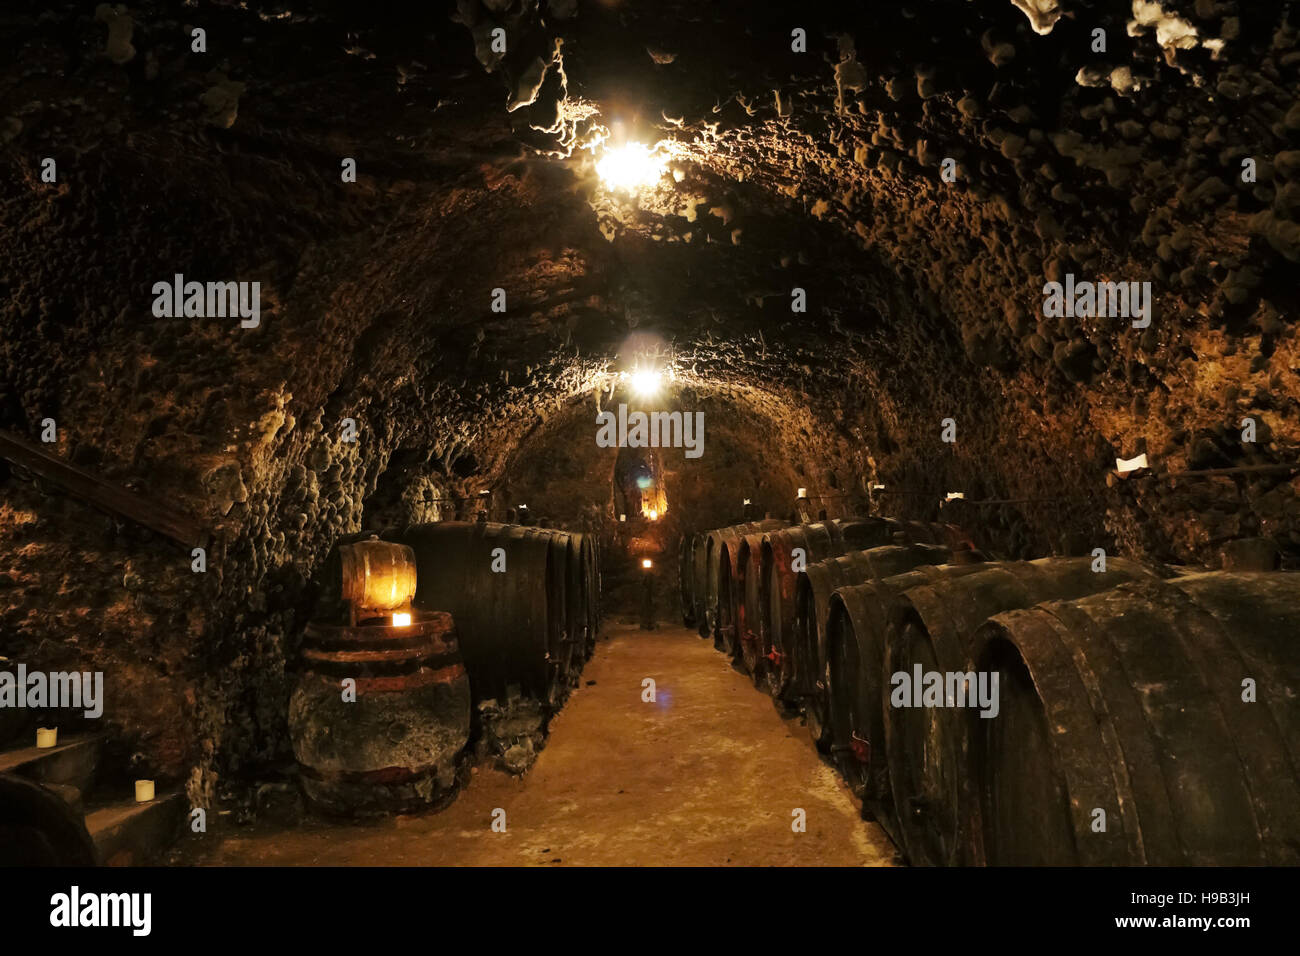 Vieux vin caves à vins de barils dans l'ARNT Mala, village de la vallée de Tokaj en Slovaquie. Banque D'Images